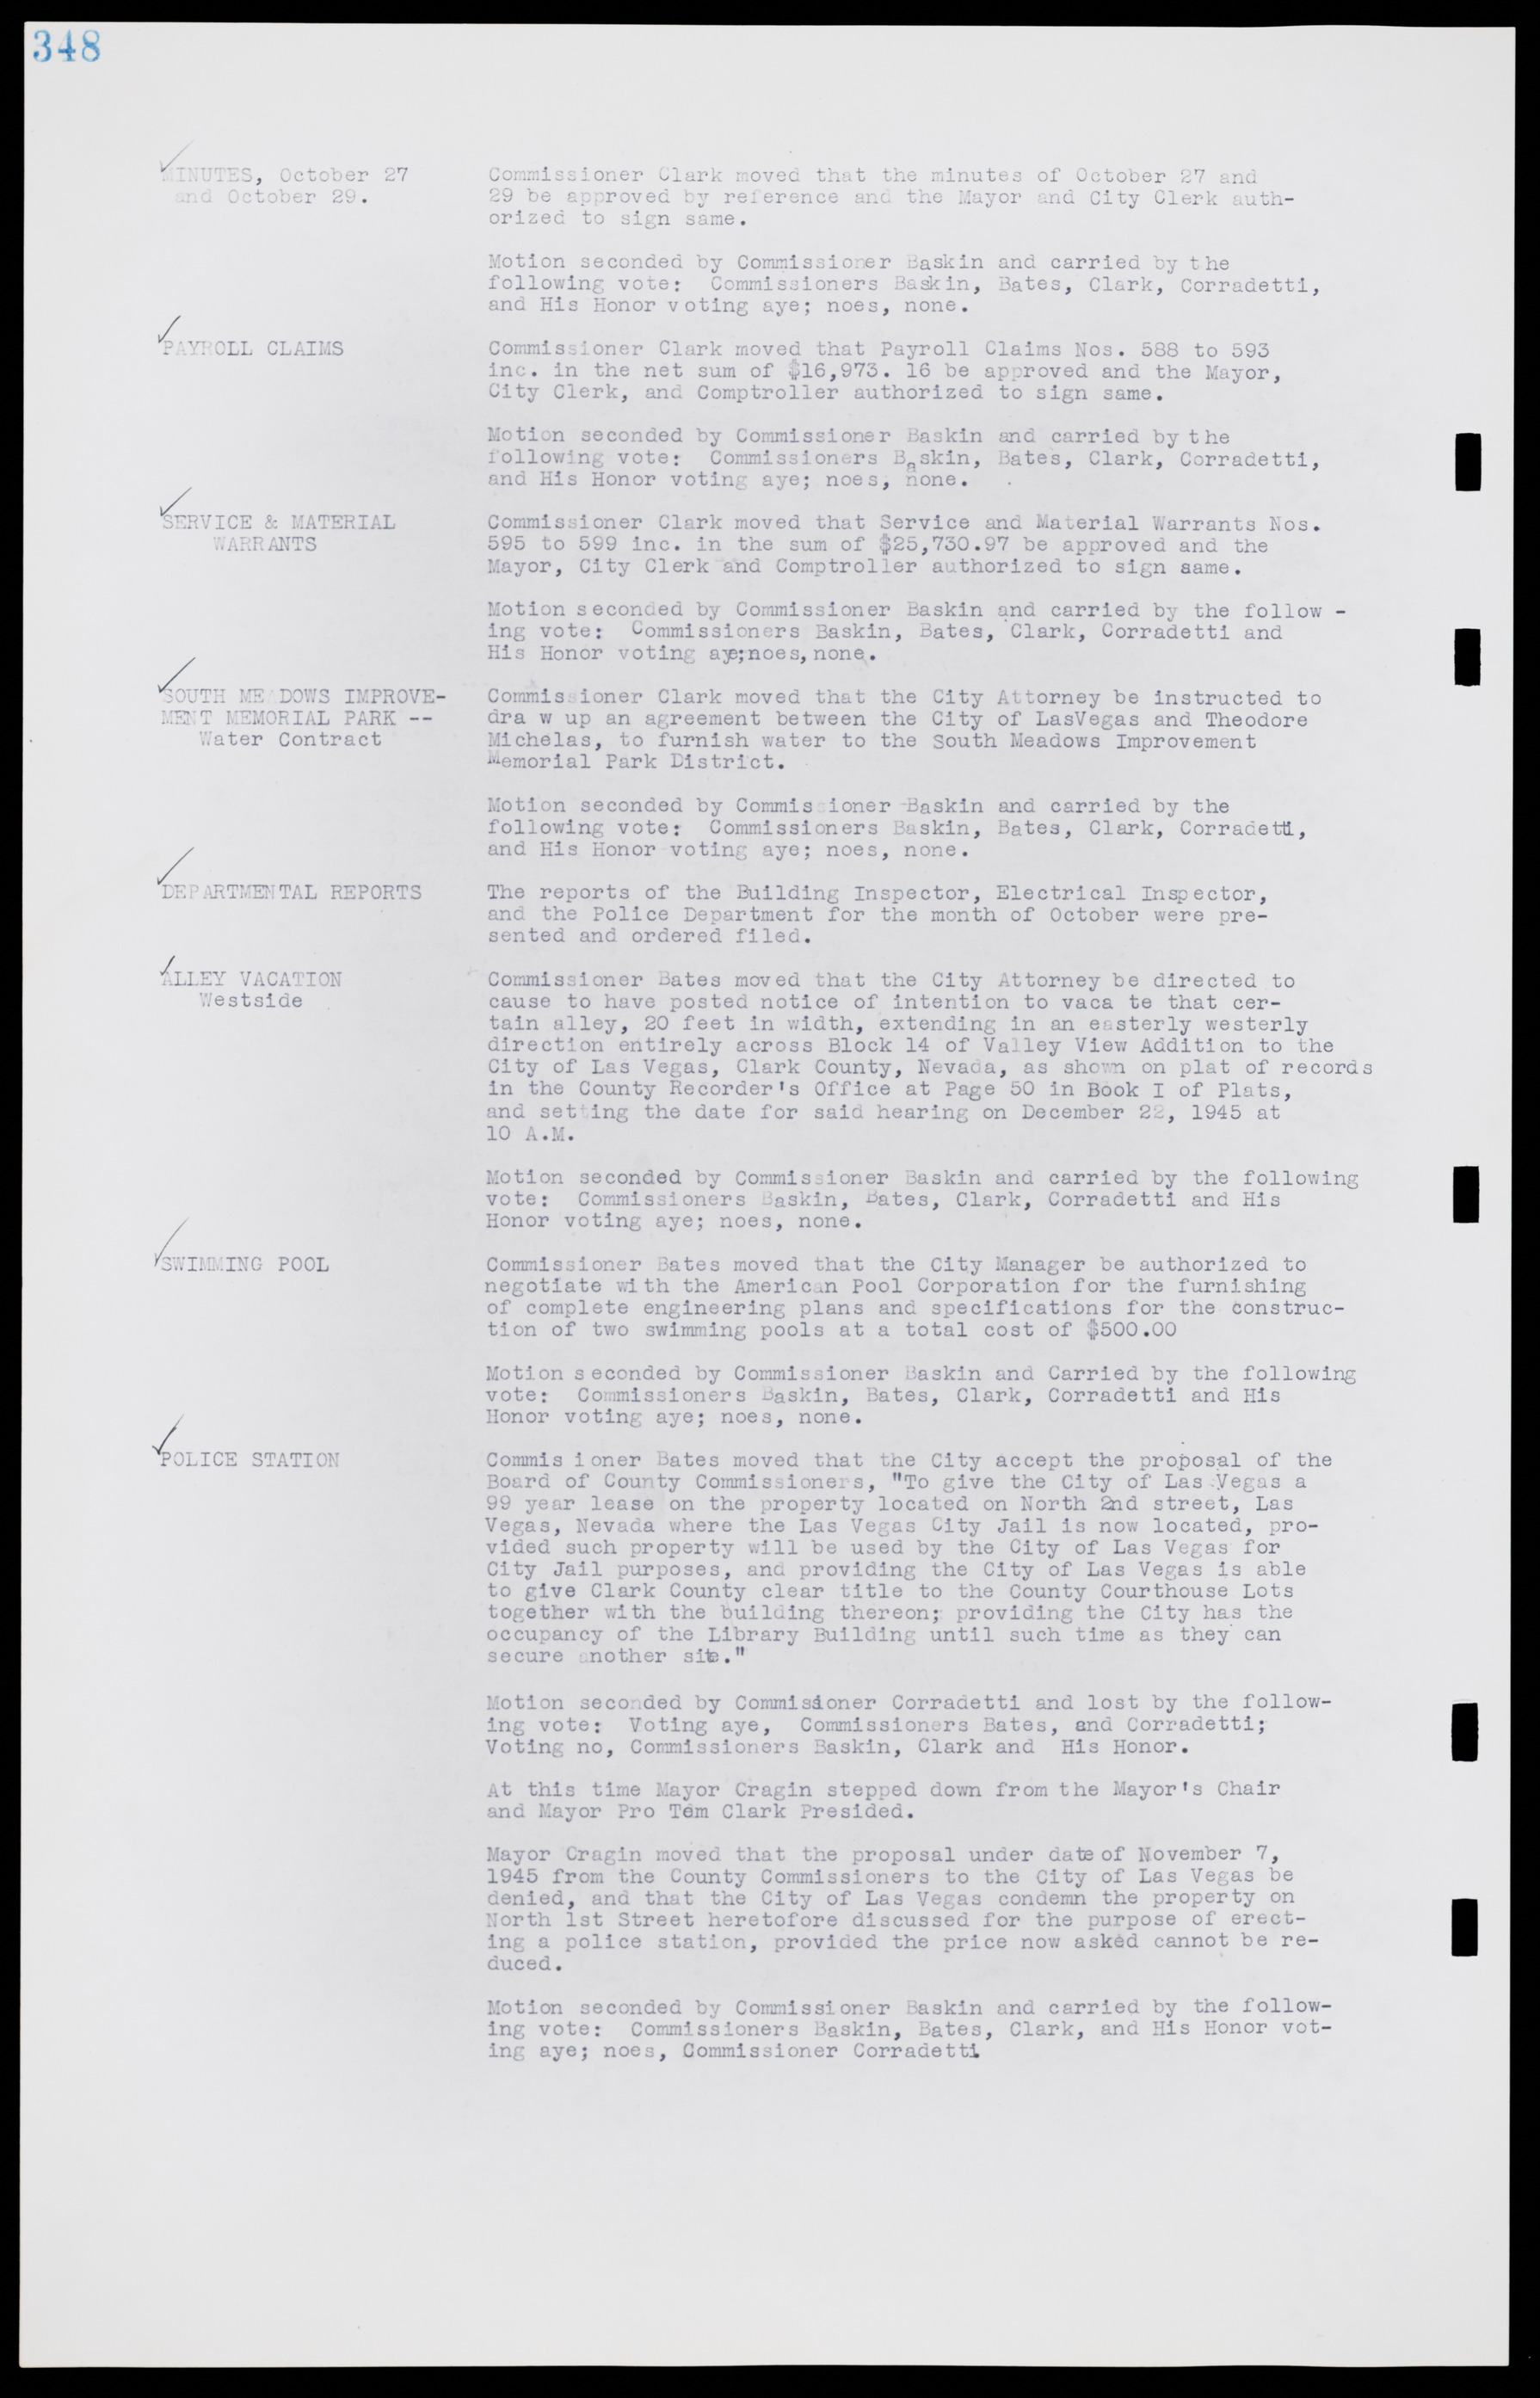 Las Vegas City Commission Minutes, August 11, 1942 to December 30, 1946, lvc000005-373